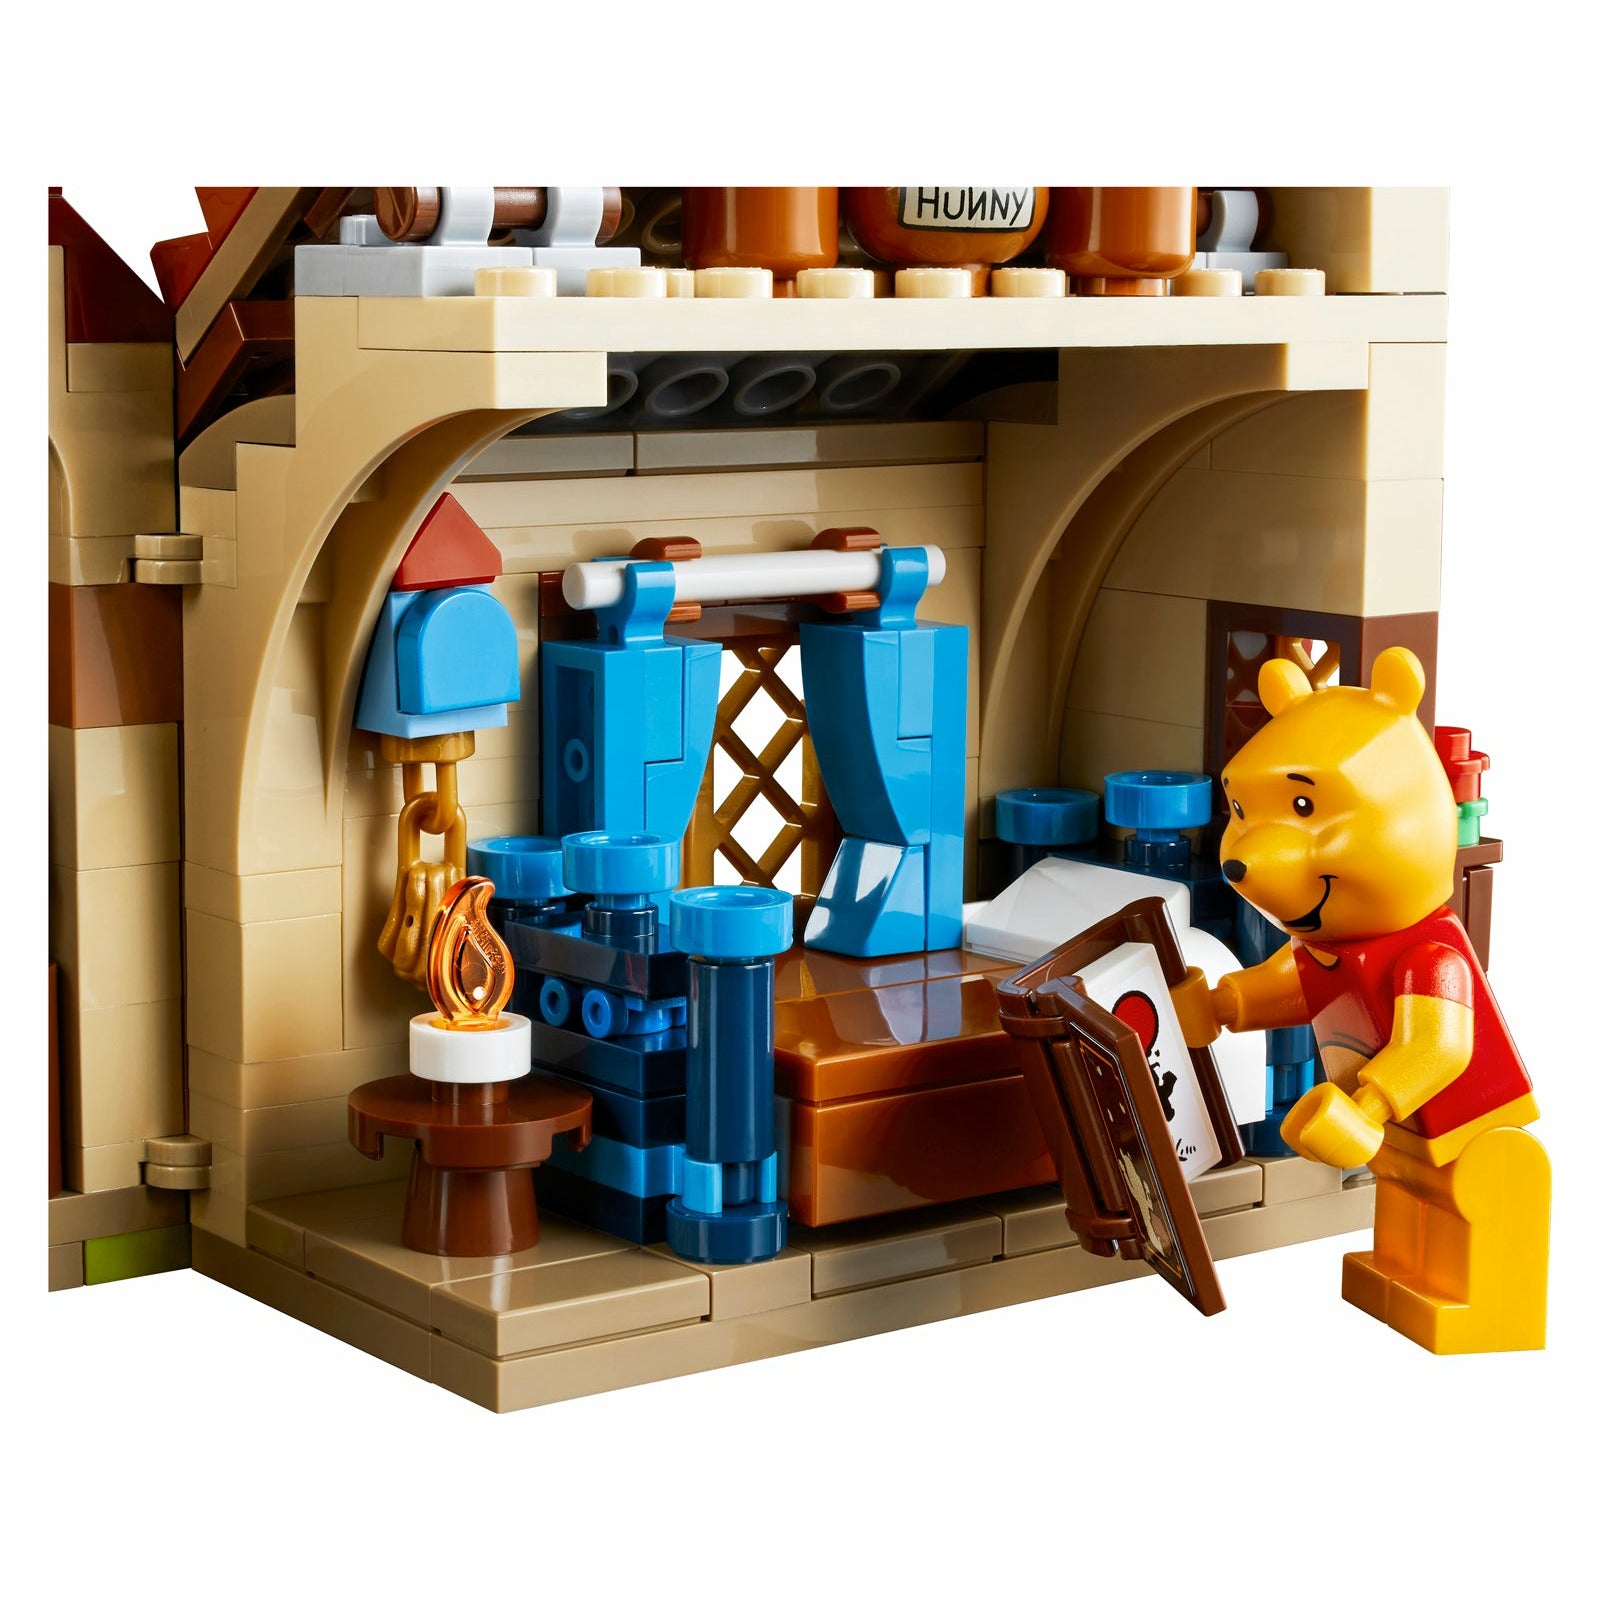 Lego Ideas: Winnie the Pooh 21326